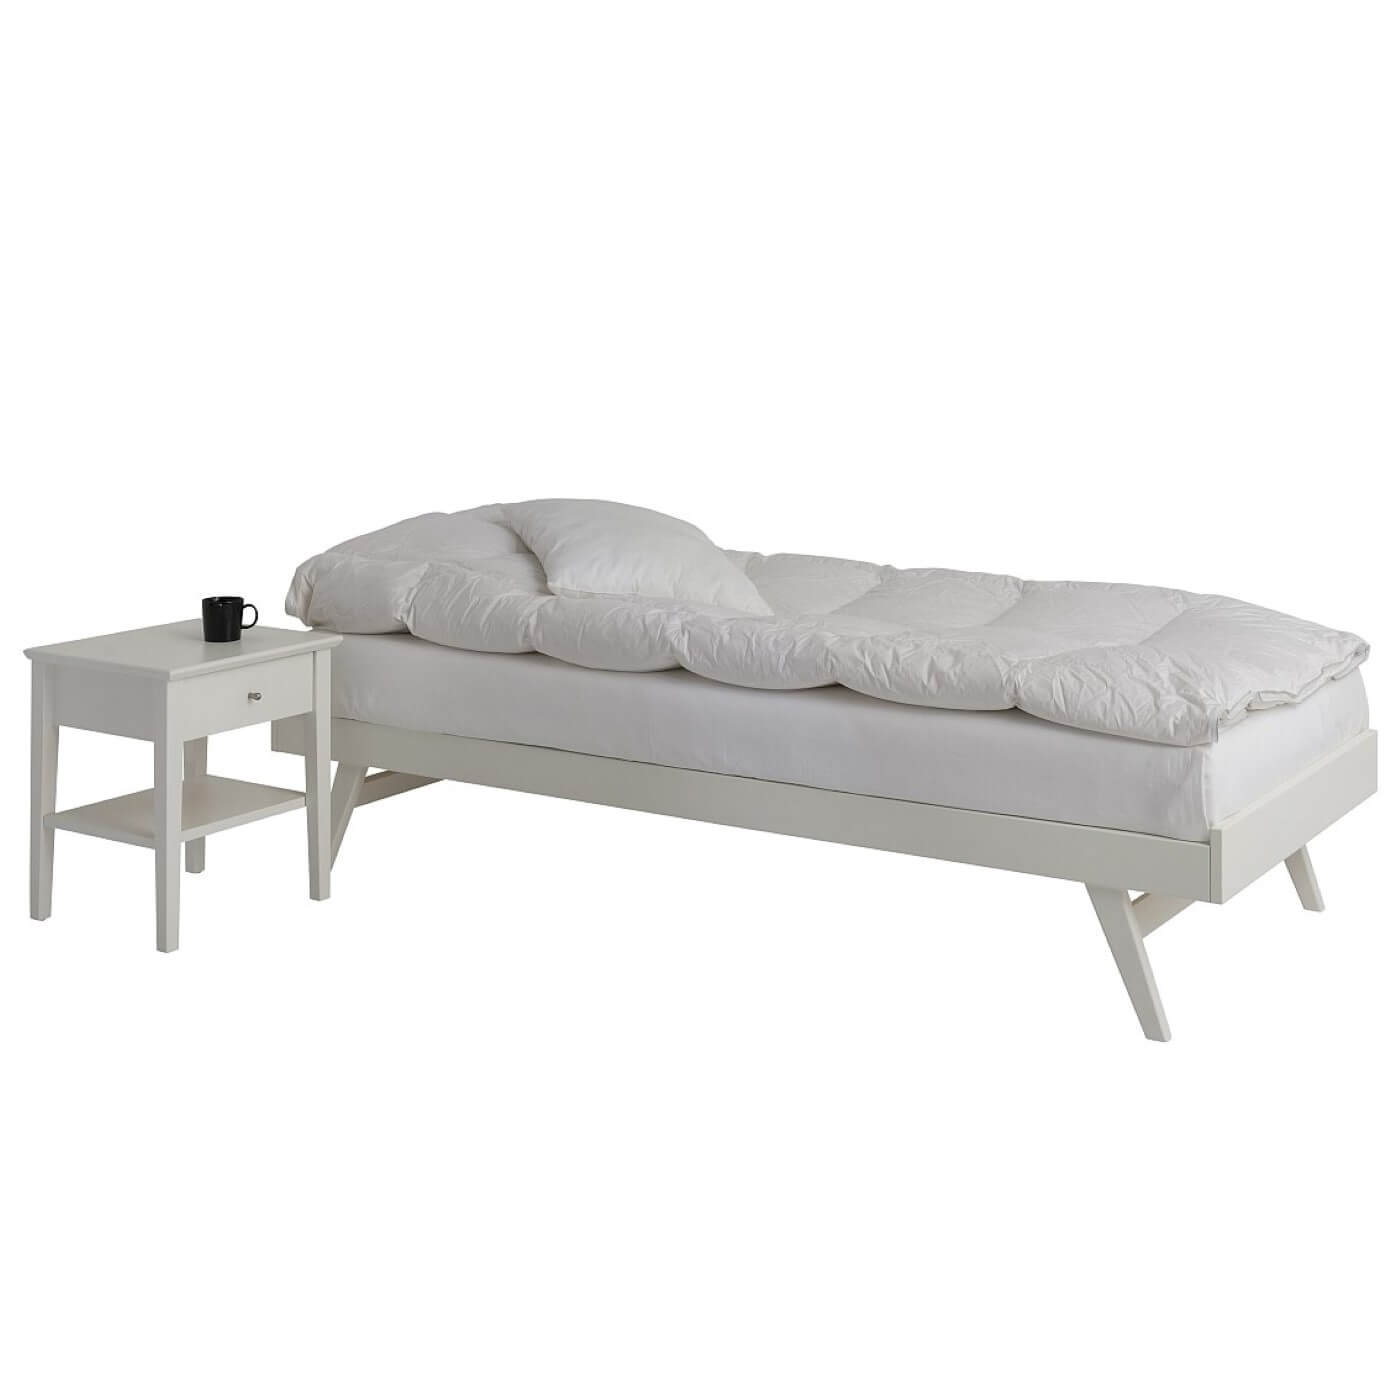 Łóżko na nóżkach NOTTE białe z materacem, białą kołdrą i poduszka widoczne w całości. Obok stoi biały stolik nocny z czarnym kubkiem. Skandynawski design